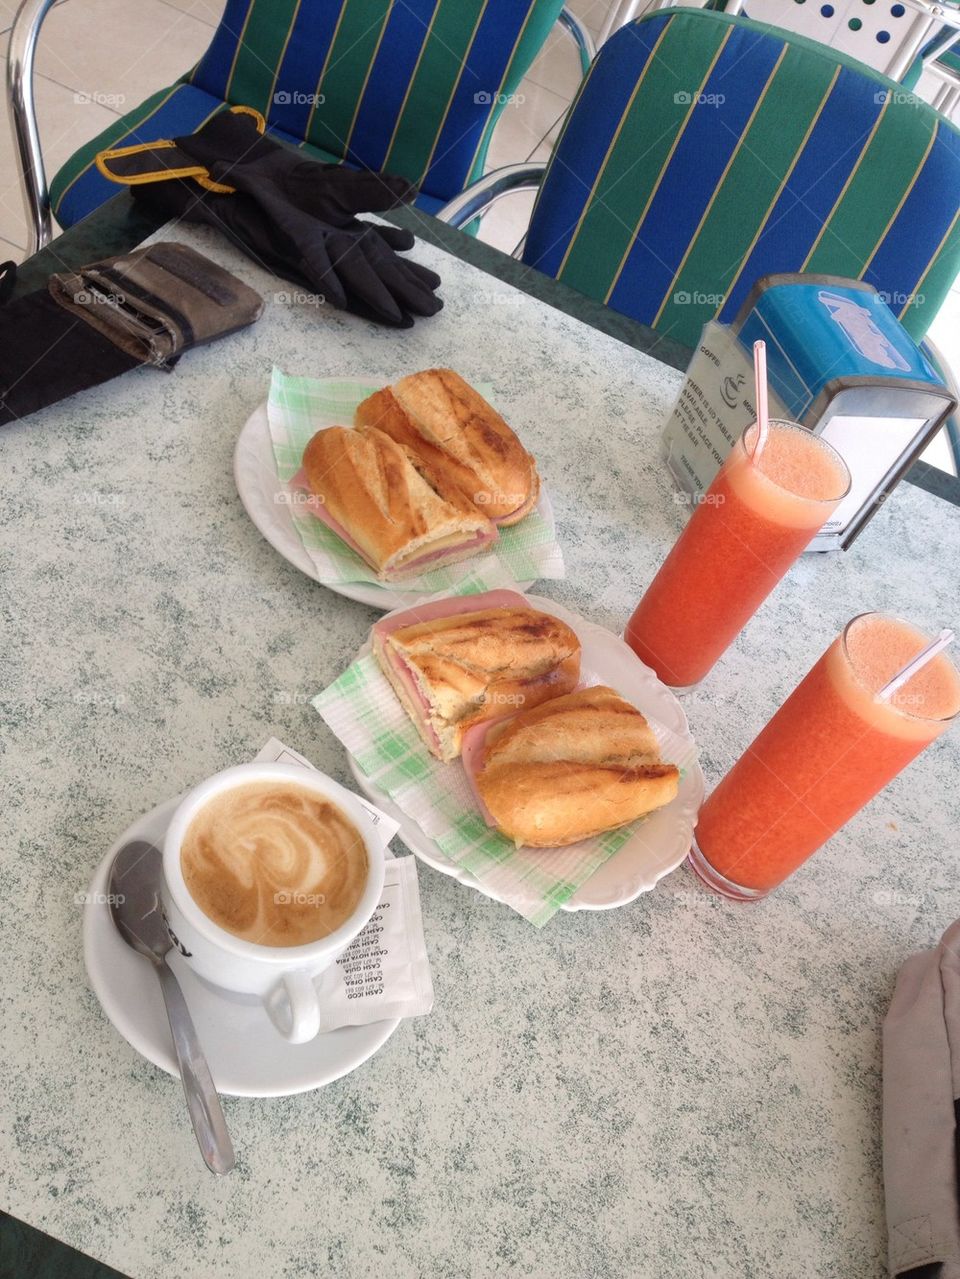 Breakfast in Tenerife